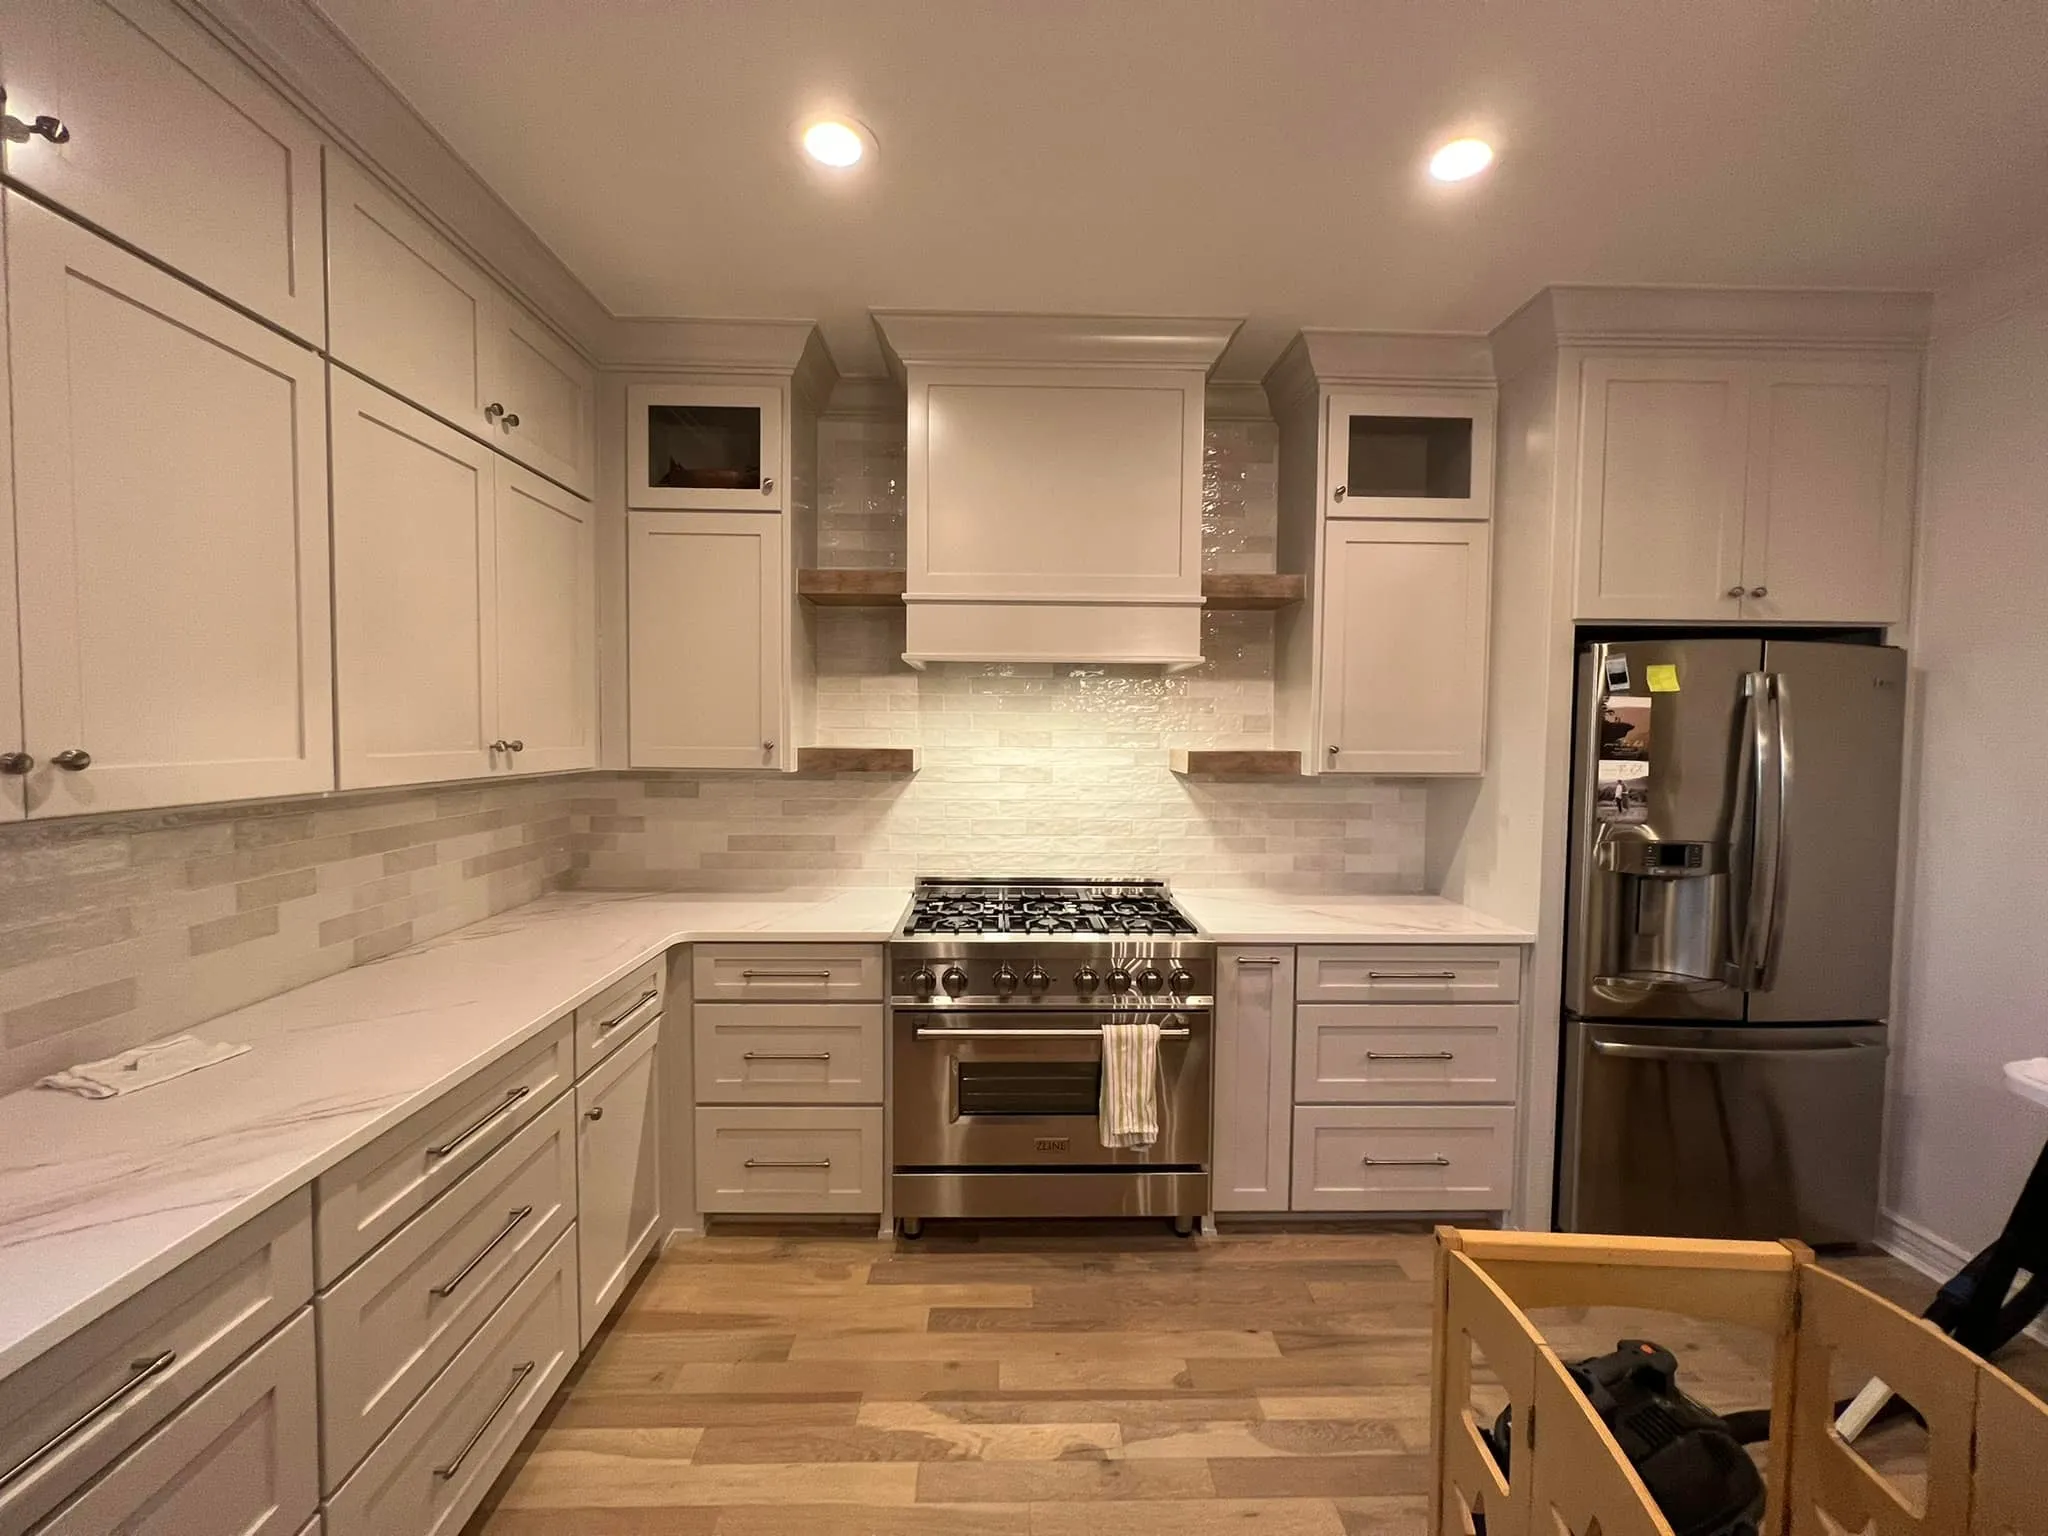 Kitchen Remodeling for Ferrer's Interiors in Centerton, AR